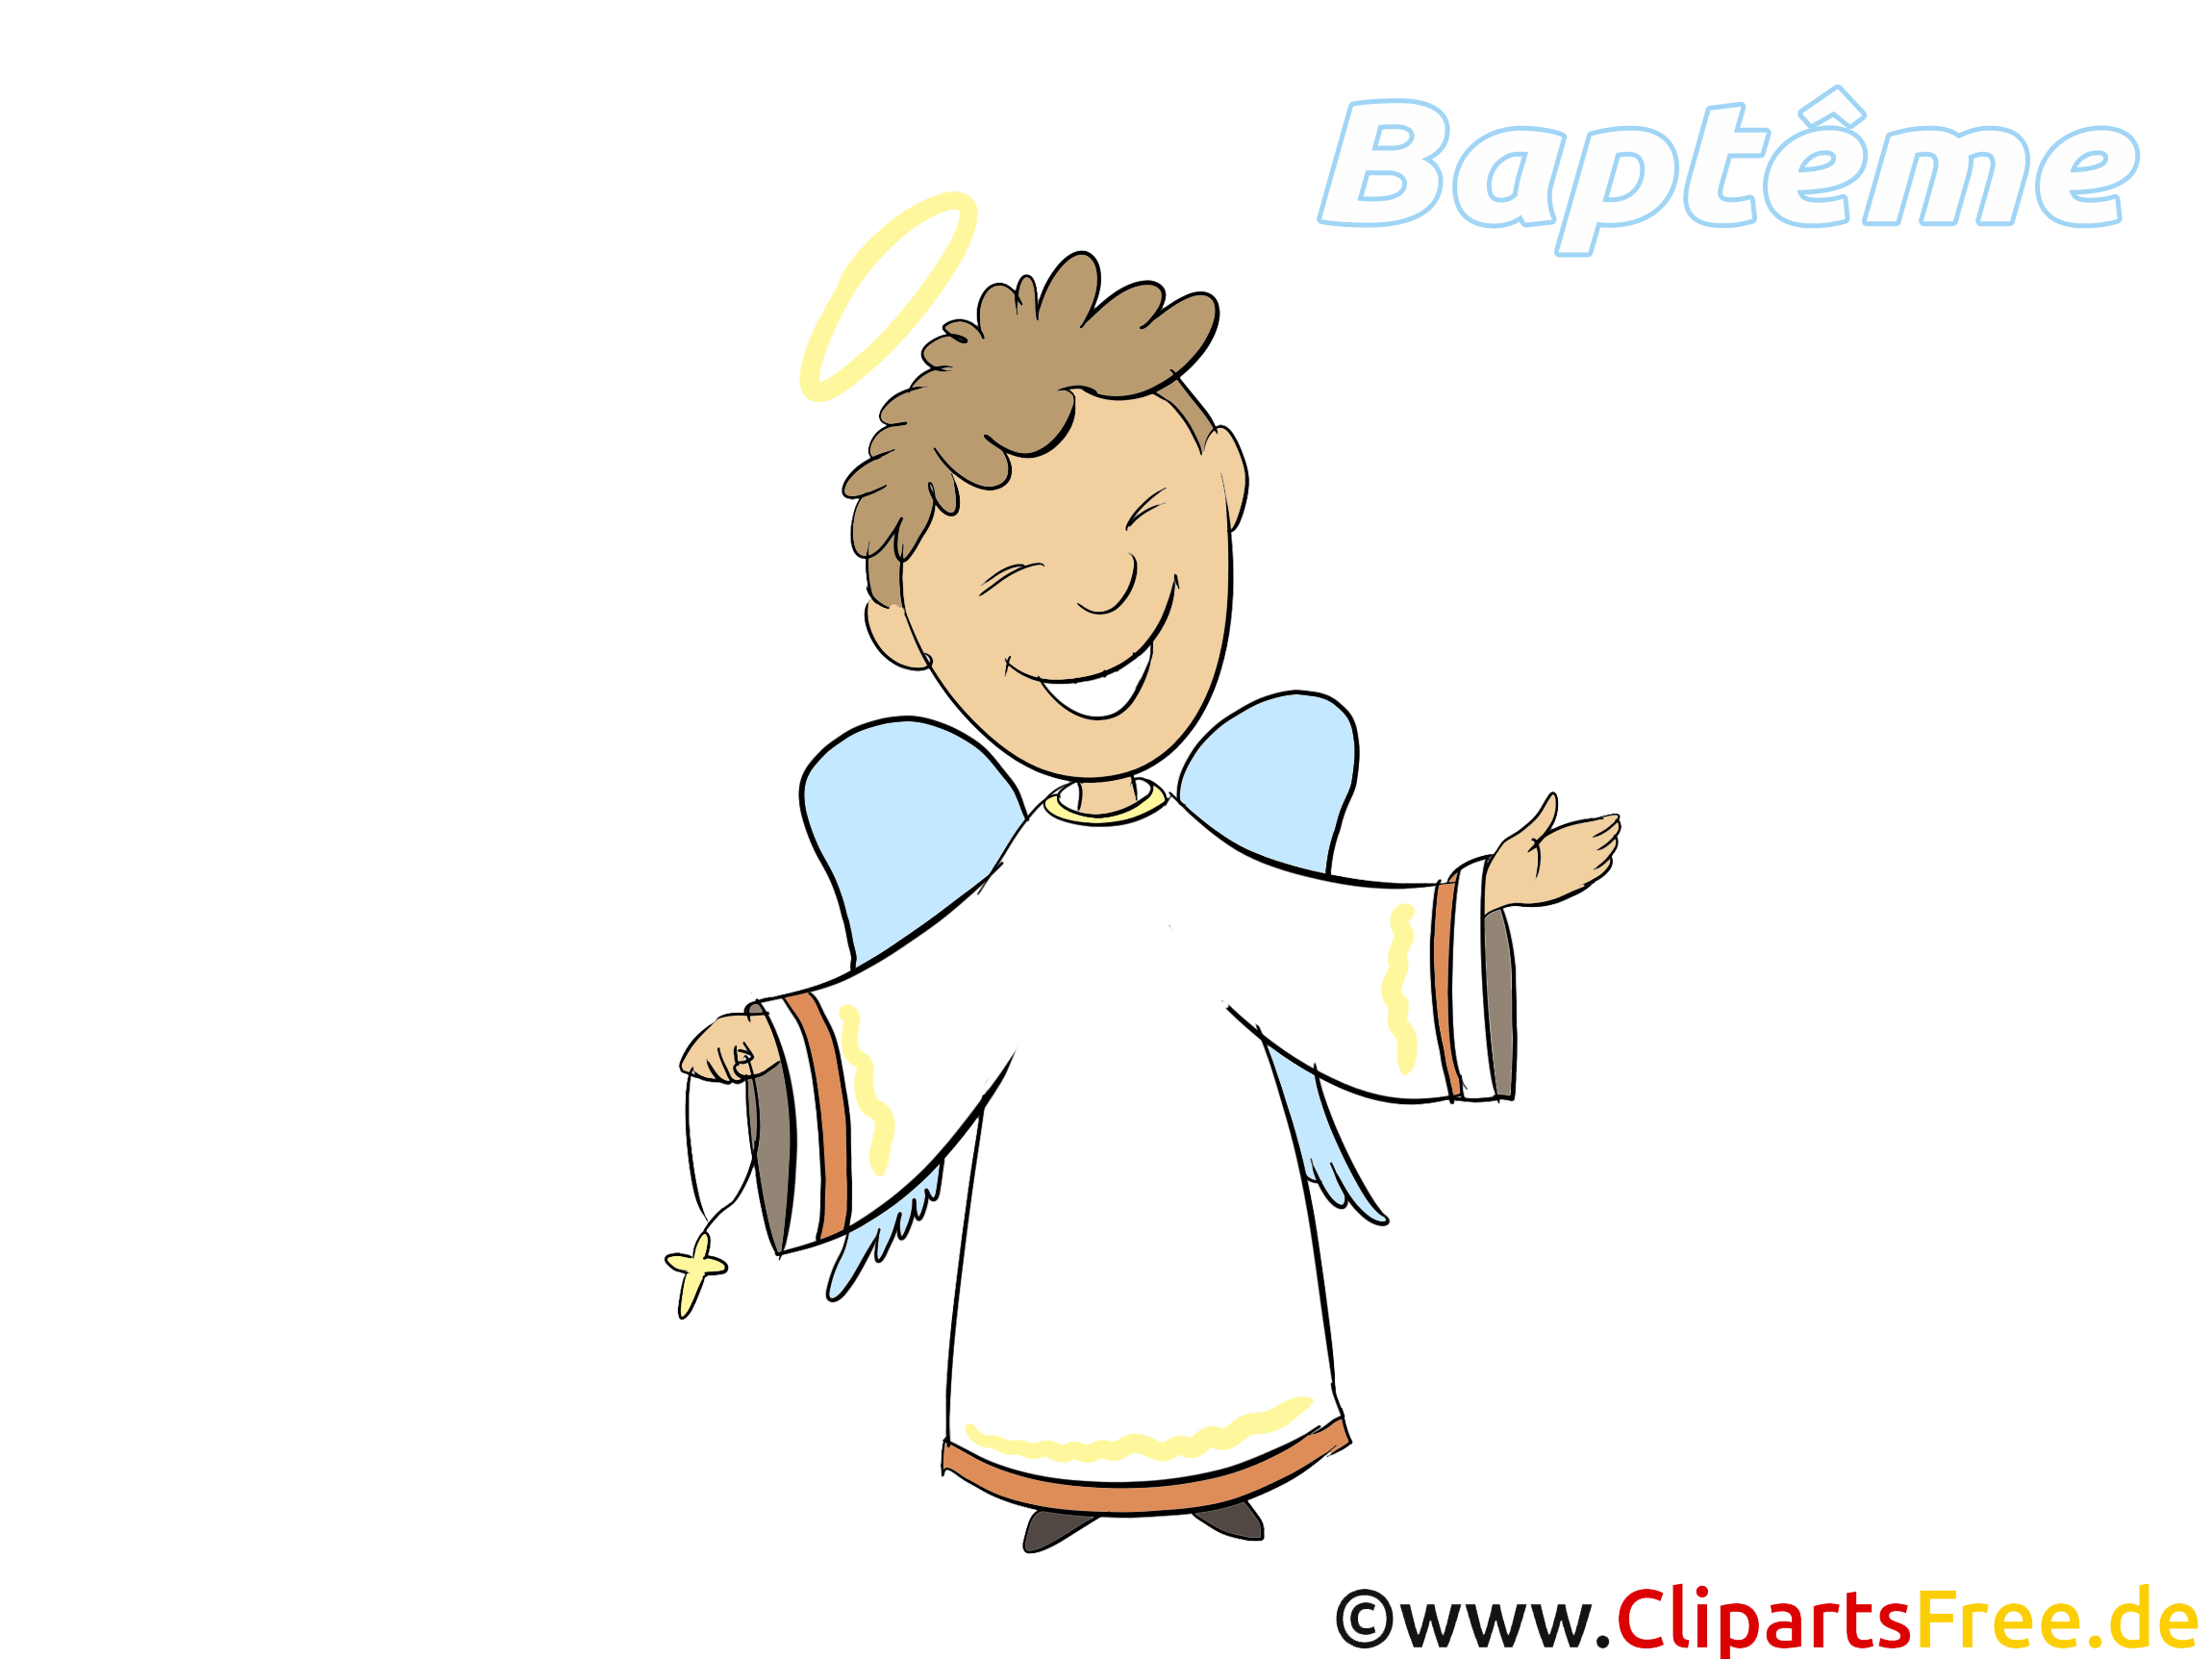 Baptême prêtre dessin gratuit à télécharger